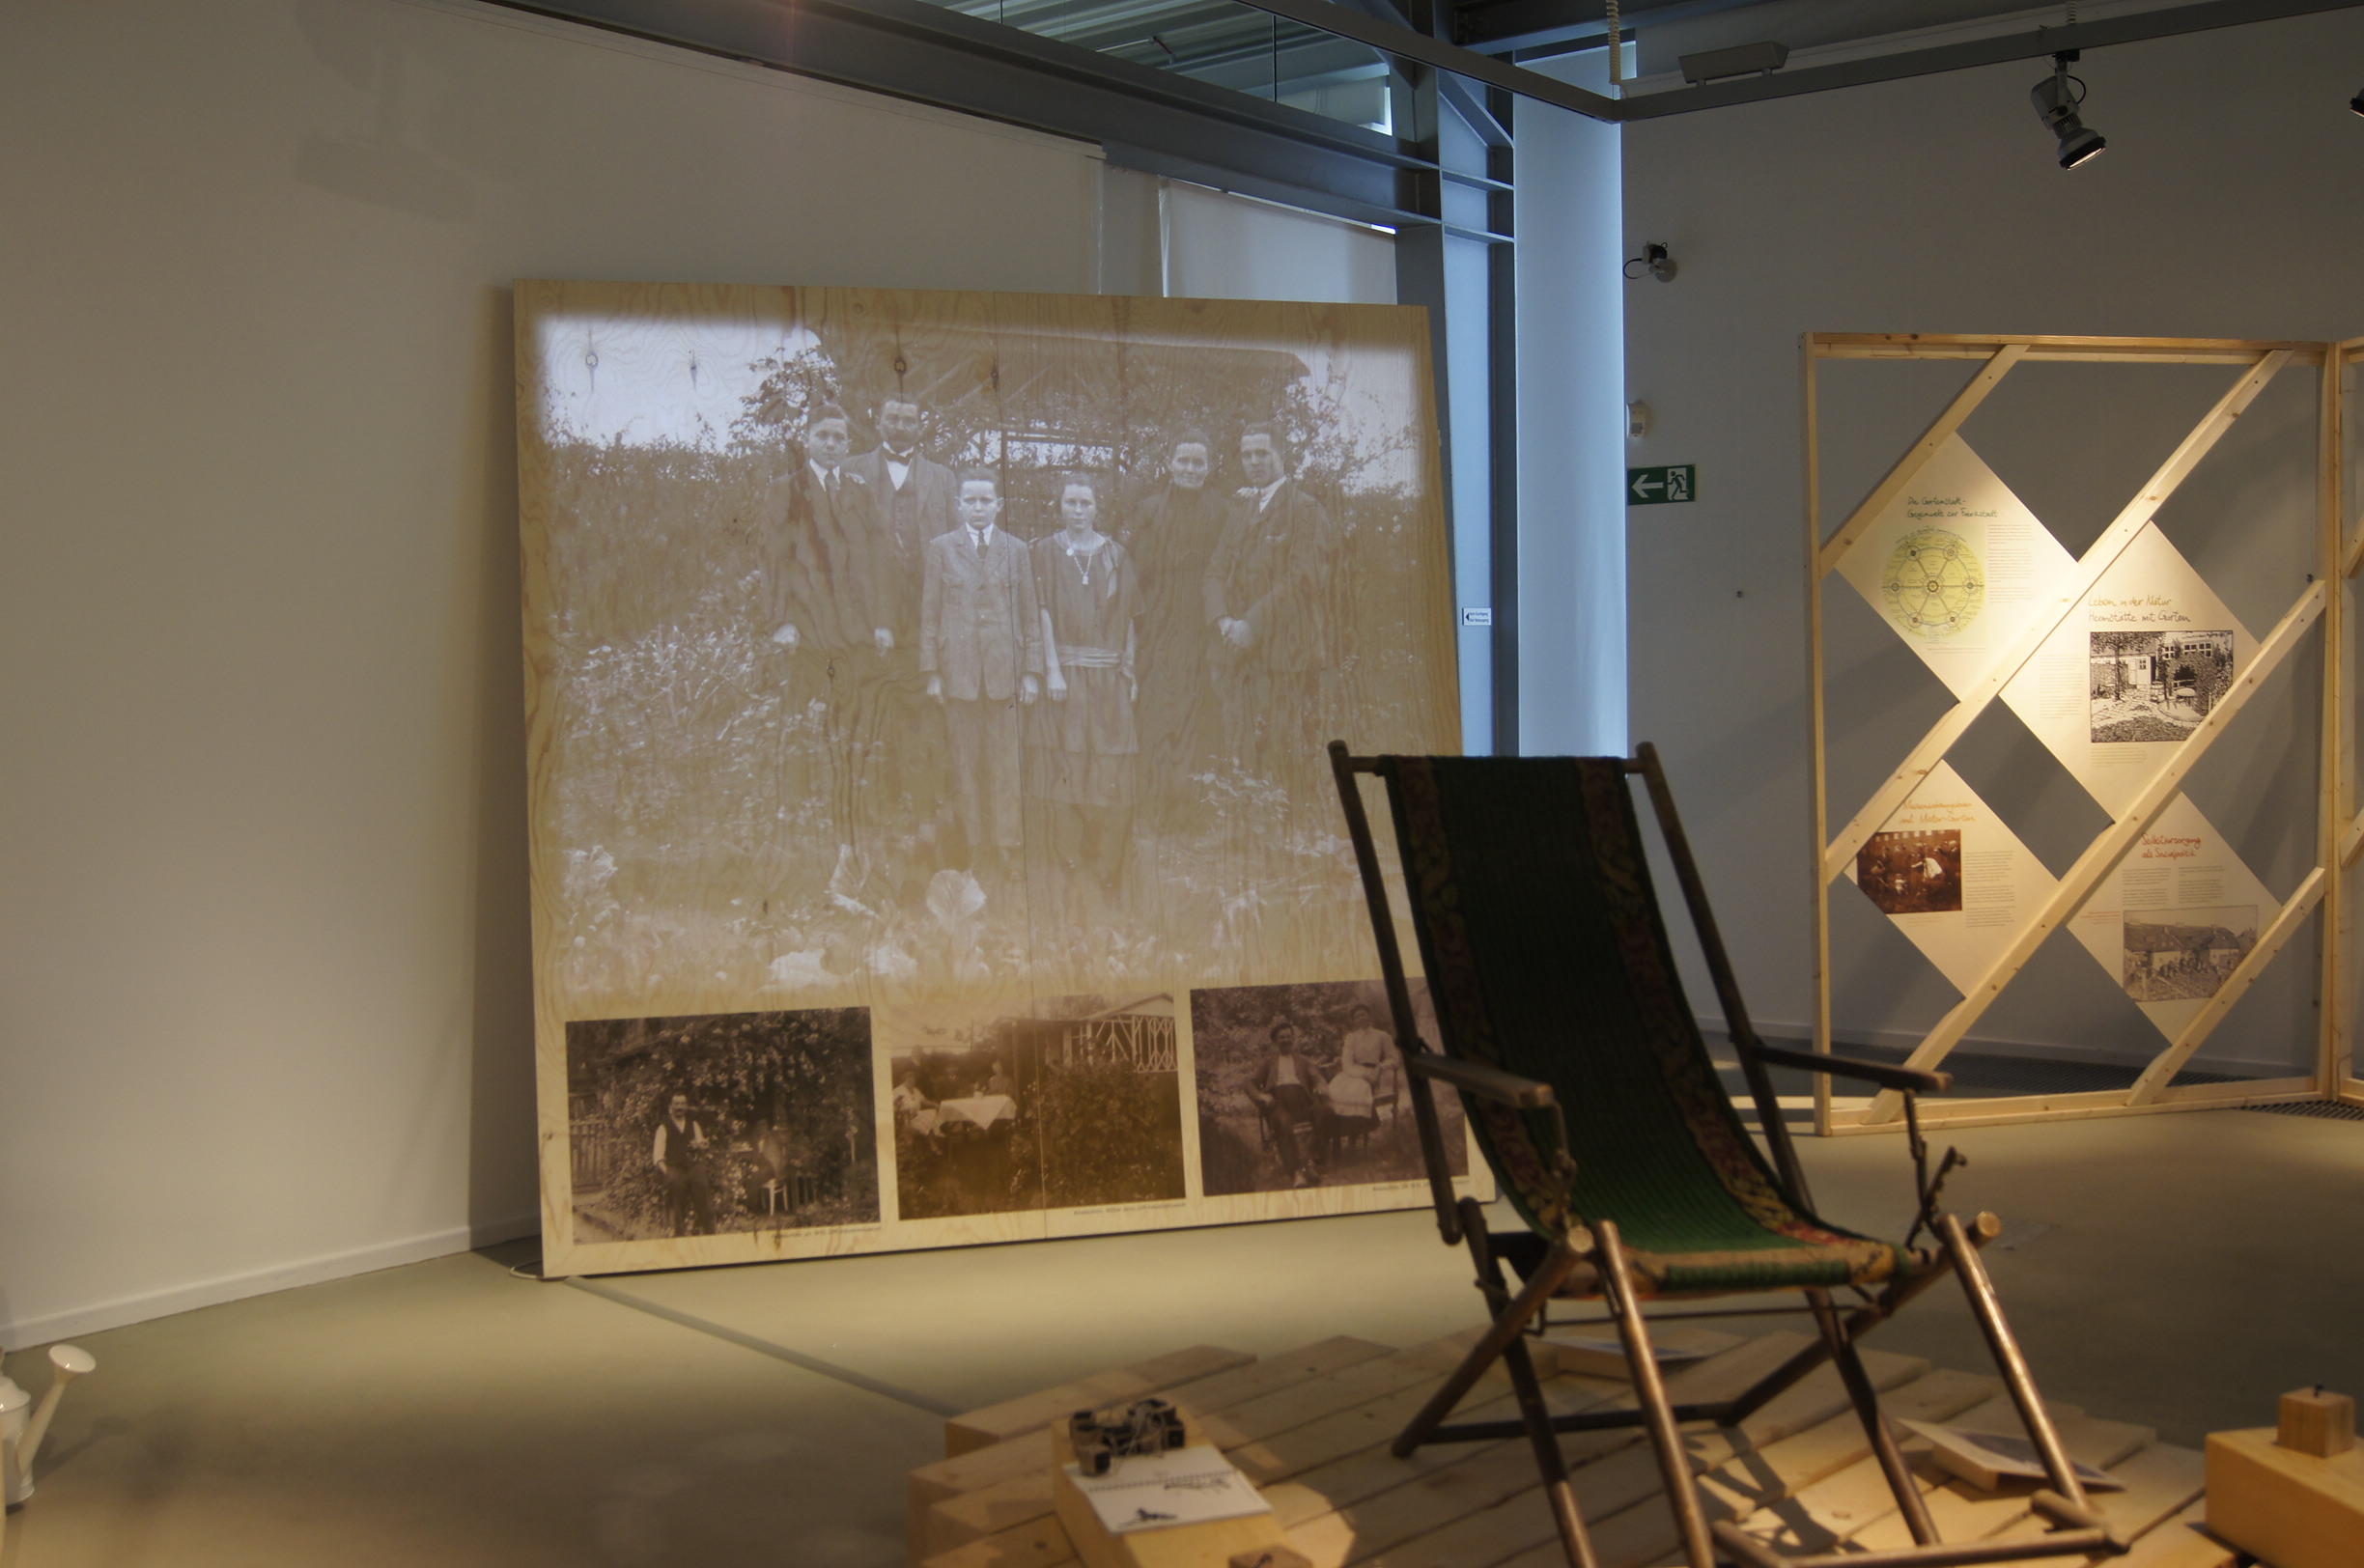 Ein Liegestuhl, im Hintergrund eine Projektion mit historischen Fotos auf Großleinwand.